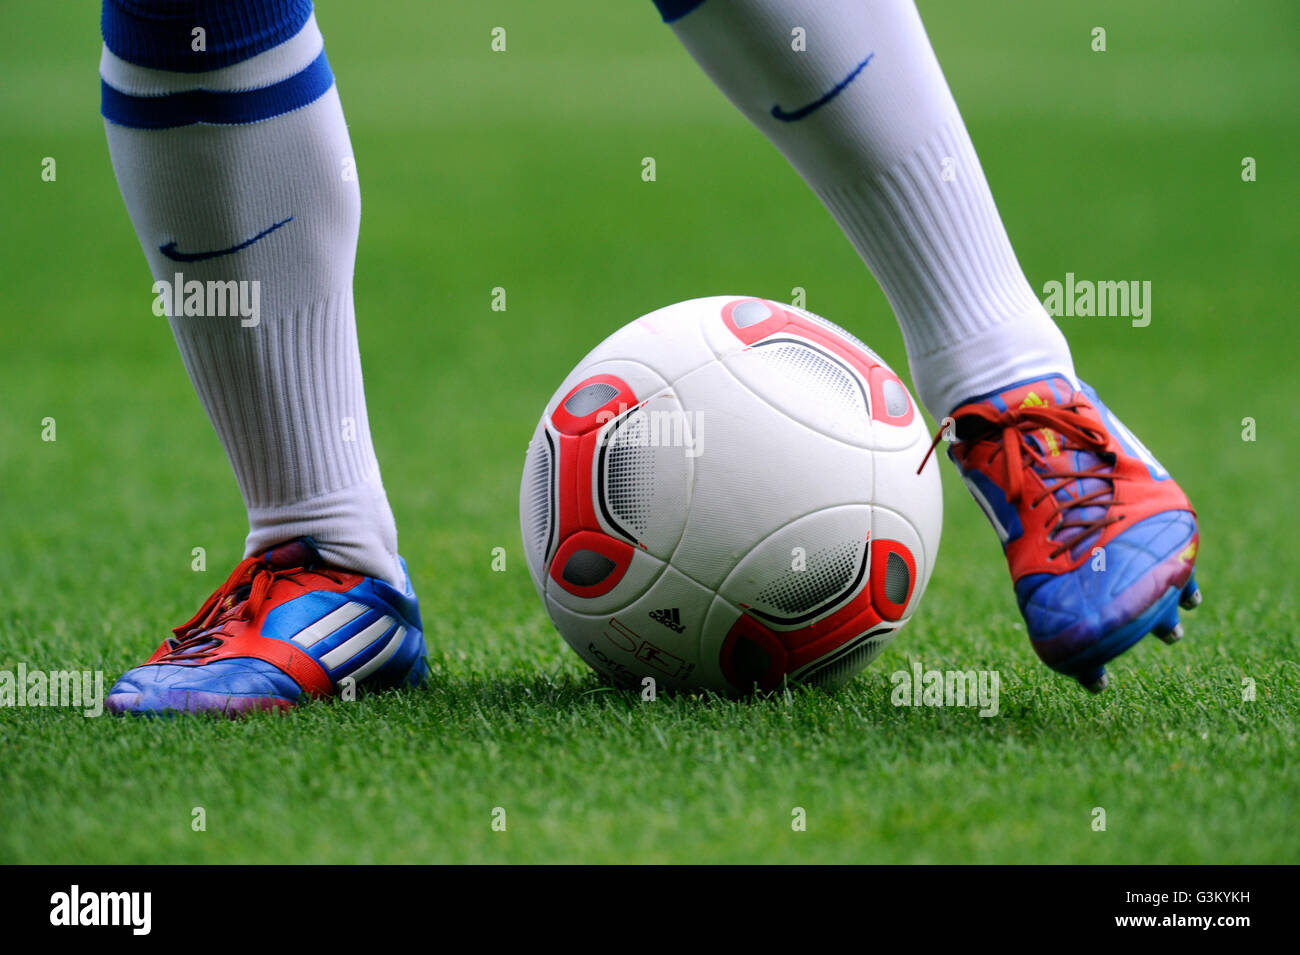 Los jugadores piernas vistiendo botas de fútbol de adidas y balón adidas Torfabrik aniversario para la 50ª temporada Bundesliga, el VfL Bochum Fotografía de stock - Alamy